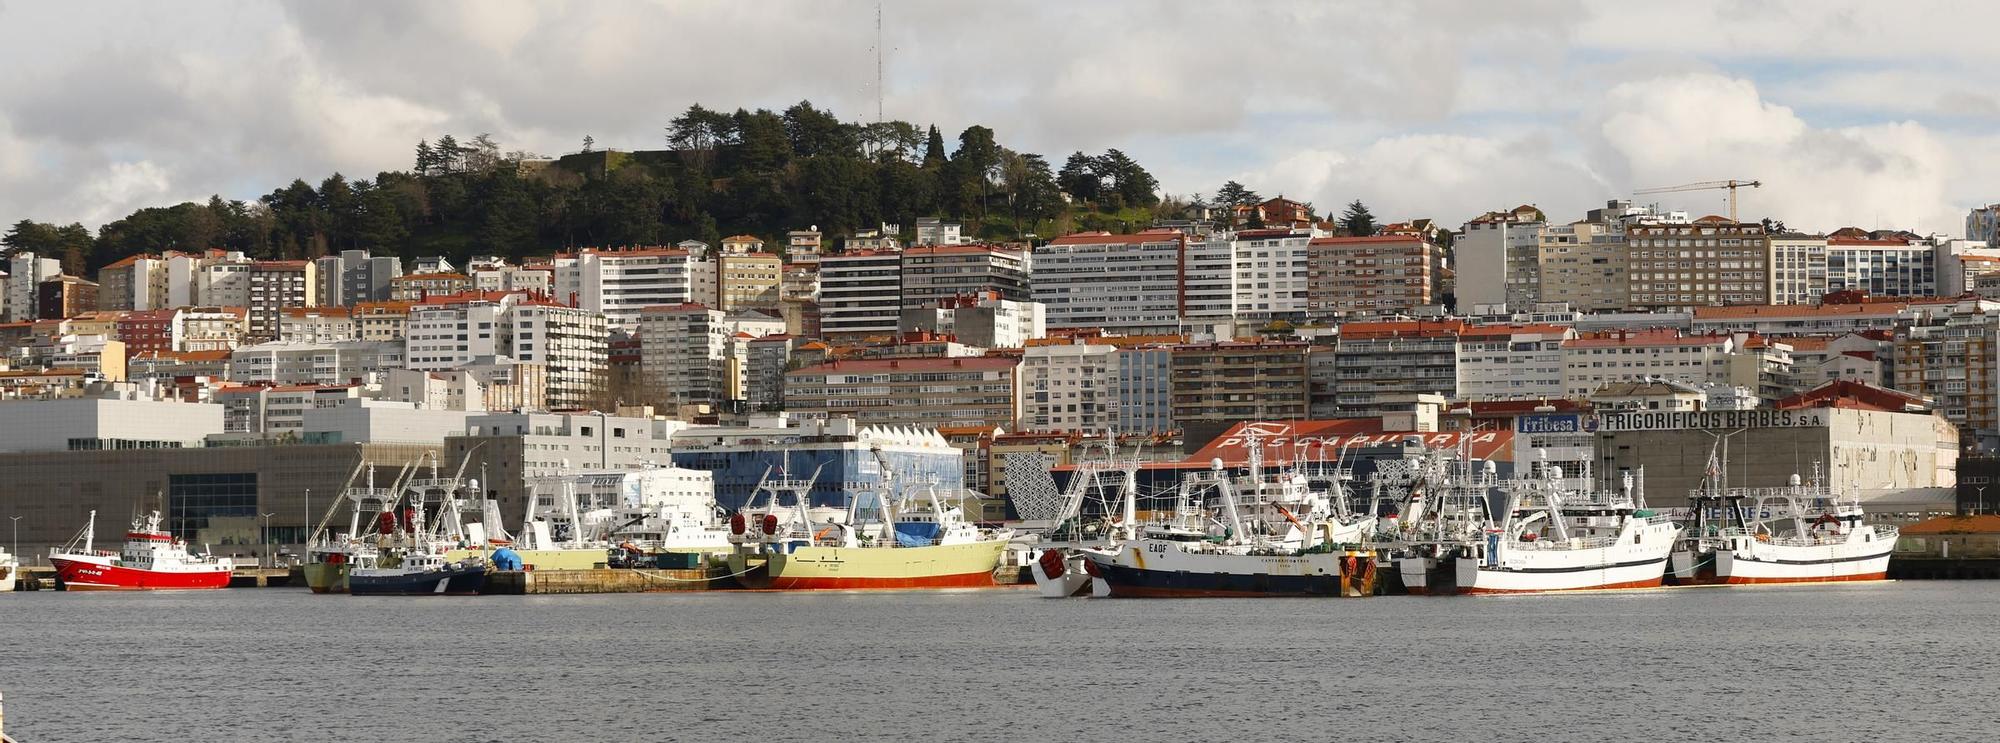 Barcos de pesca en Beiramar, Vigo